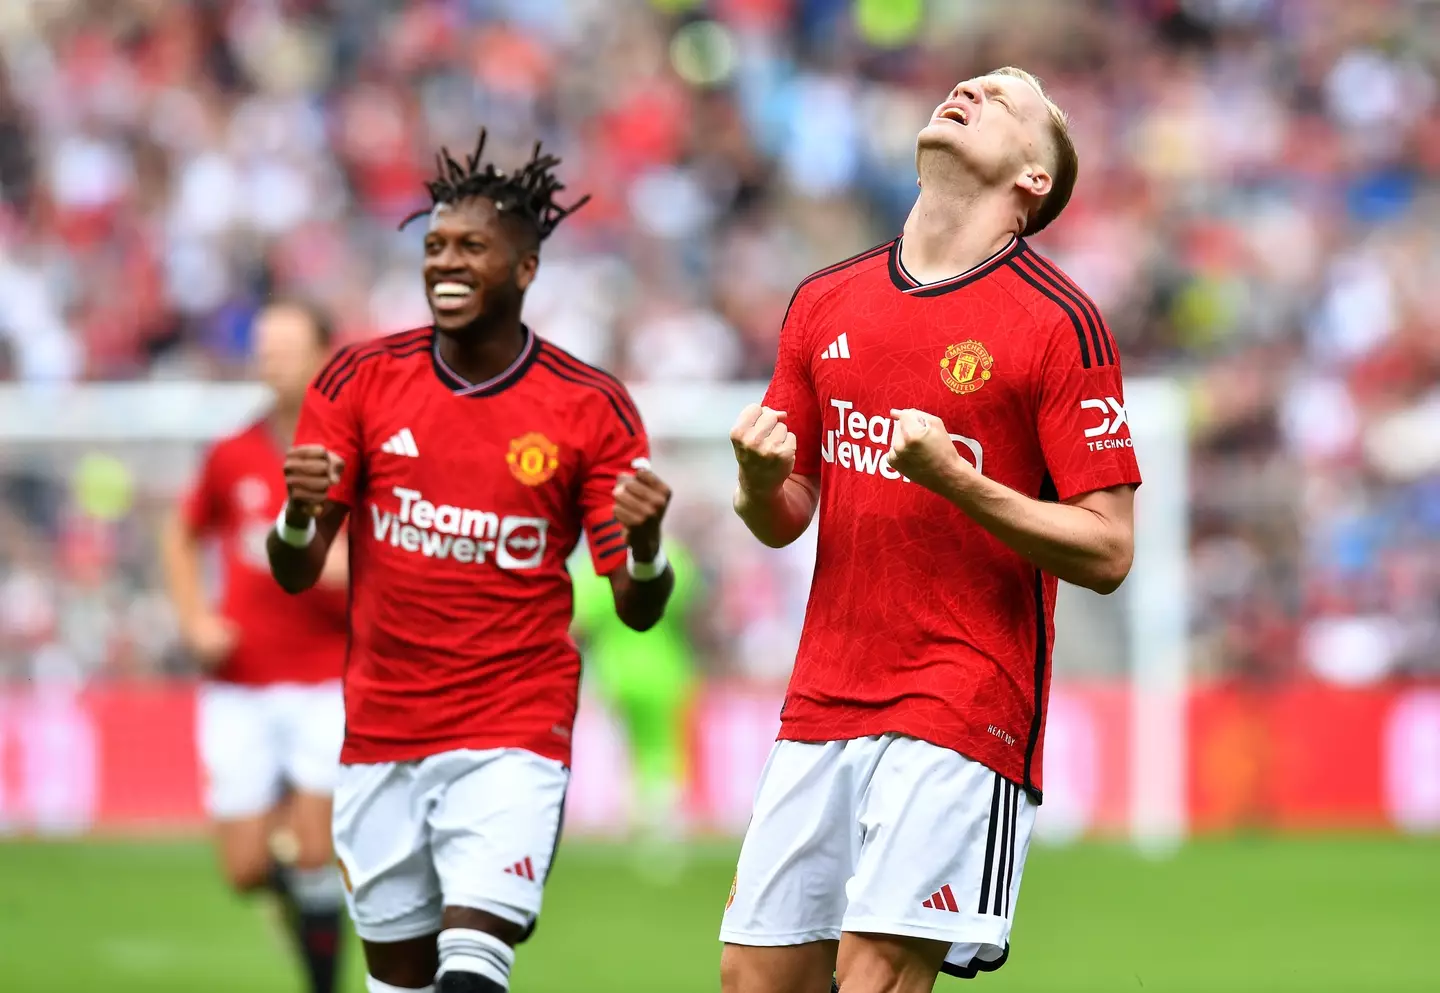 Donny van de Beek celebrates after scoring for Manchester United. Image: Getty